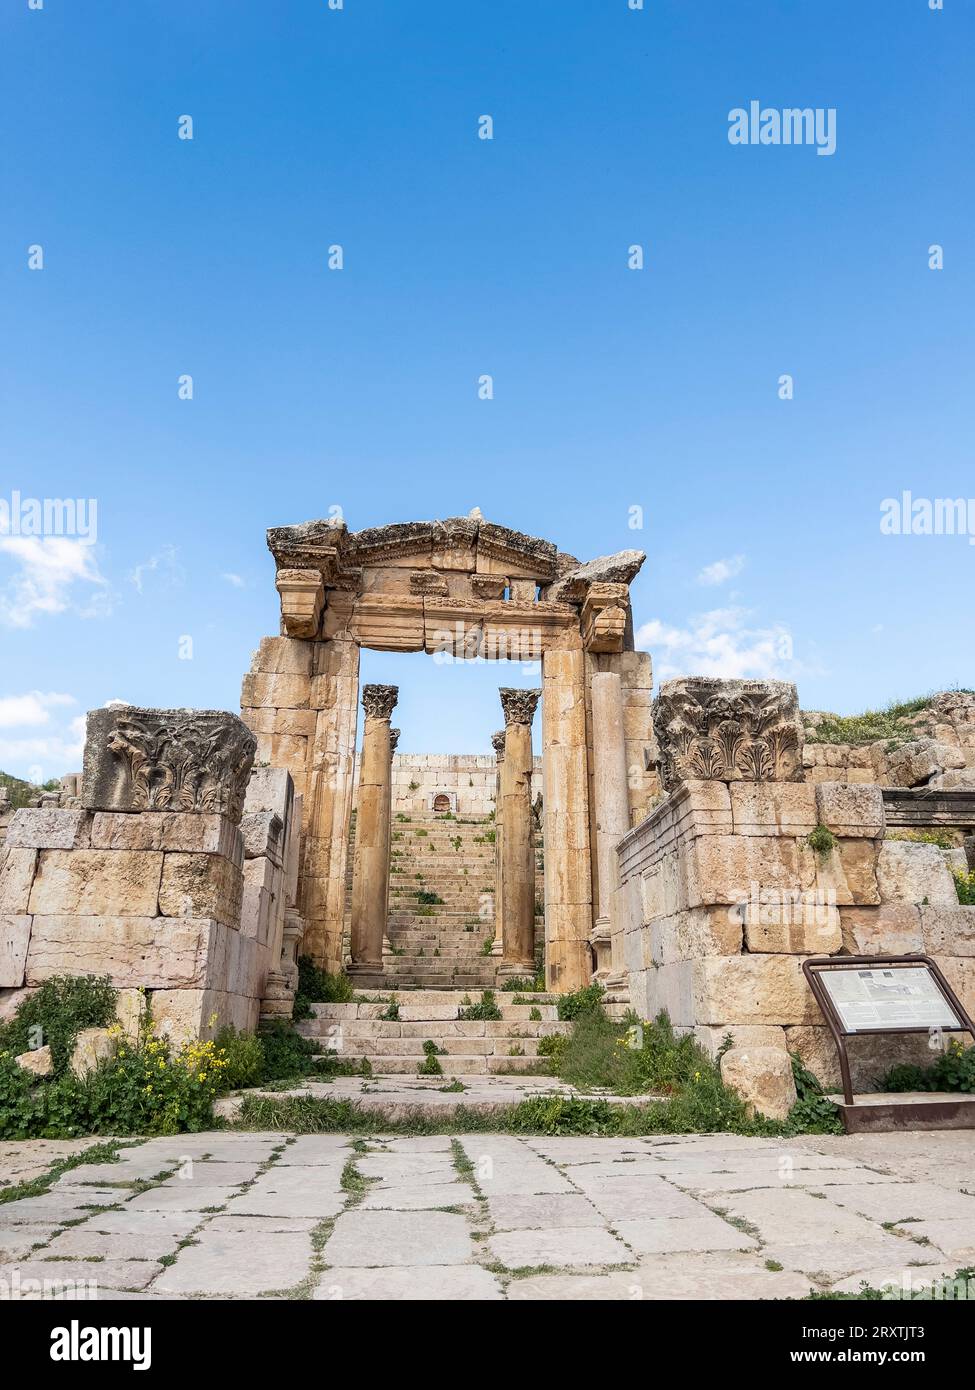 Colonne nell'antica città di Jerash, che si ritiene sia stata fondata nel 331 a.C. da Alessandro Magno, Jerash, Giordania, Medio Oriente Foto Stock